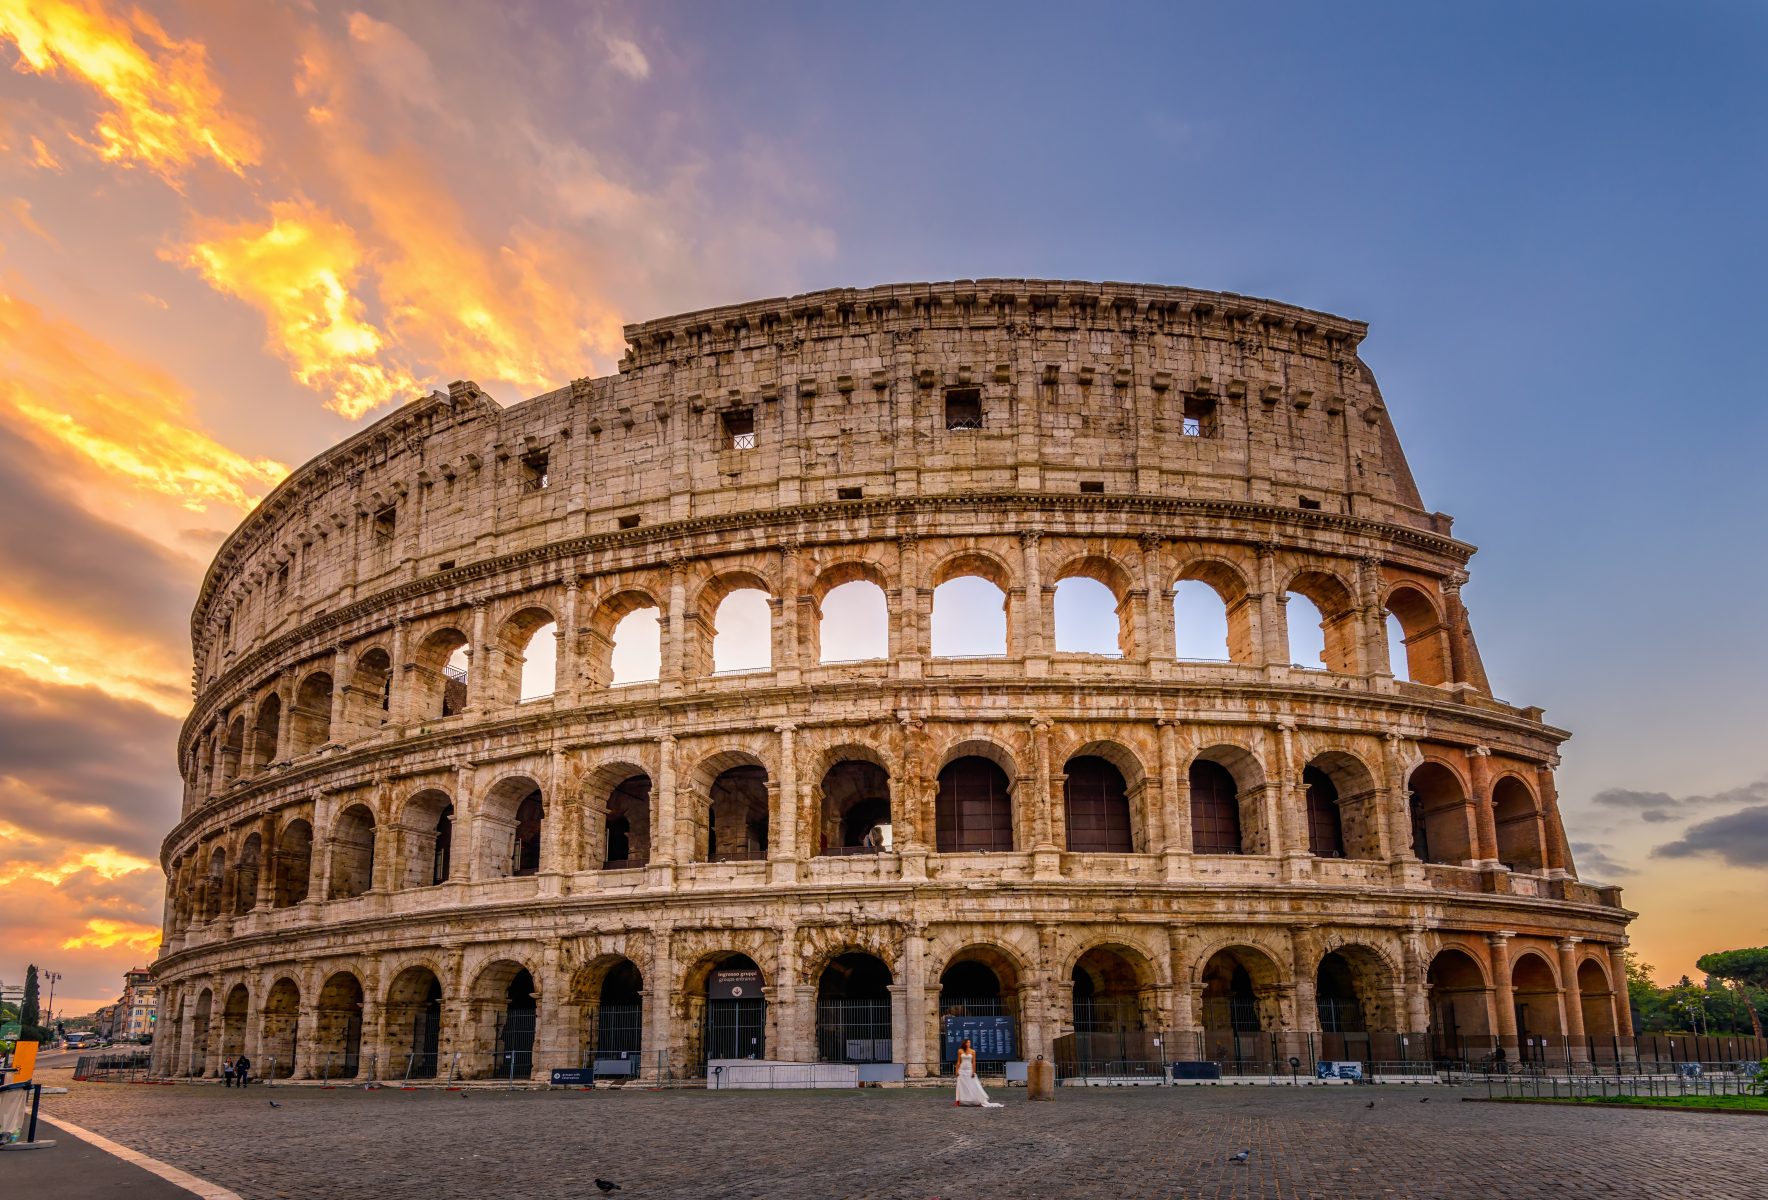 Colosseum sunrise in Rome